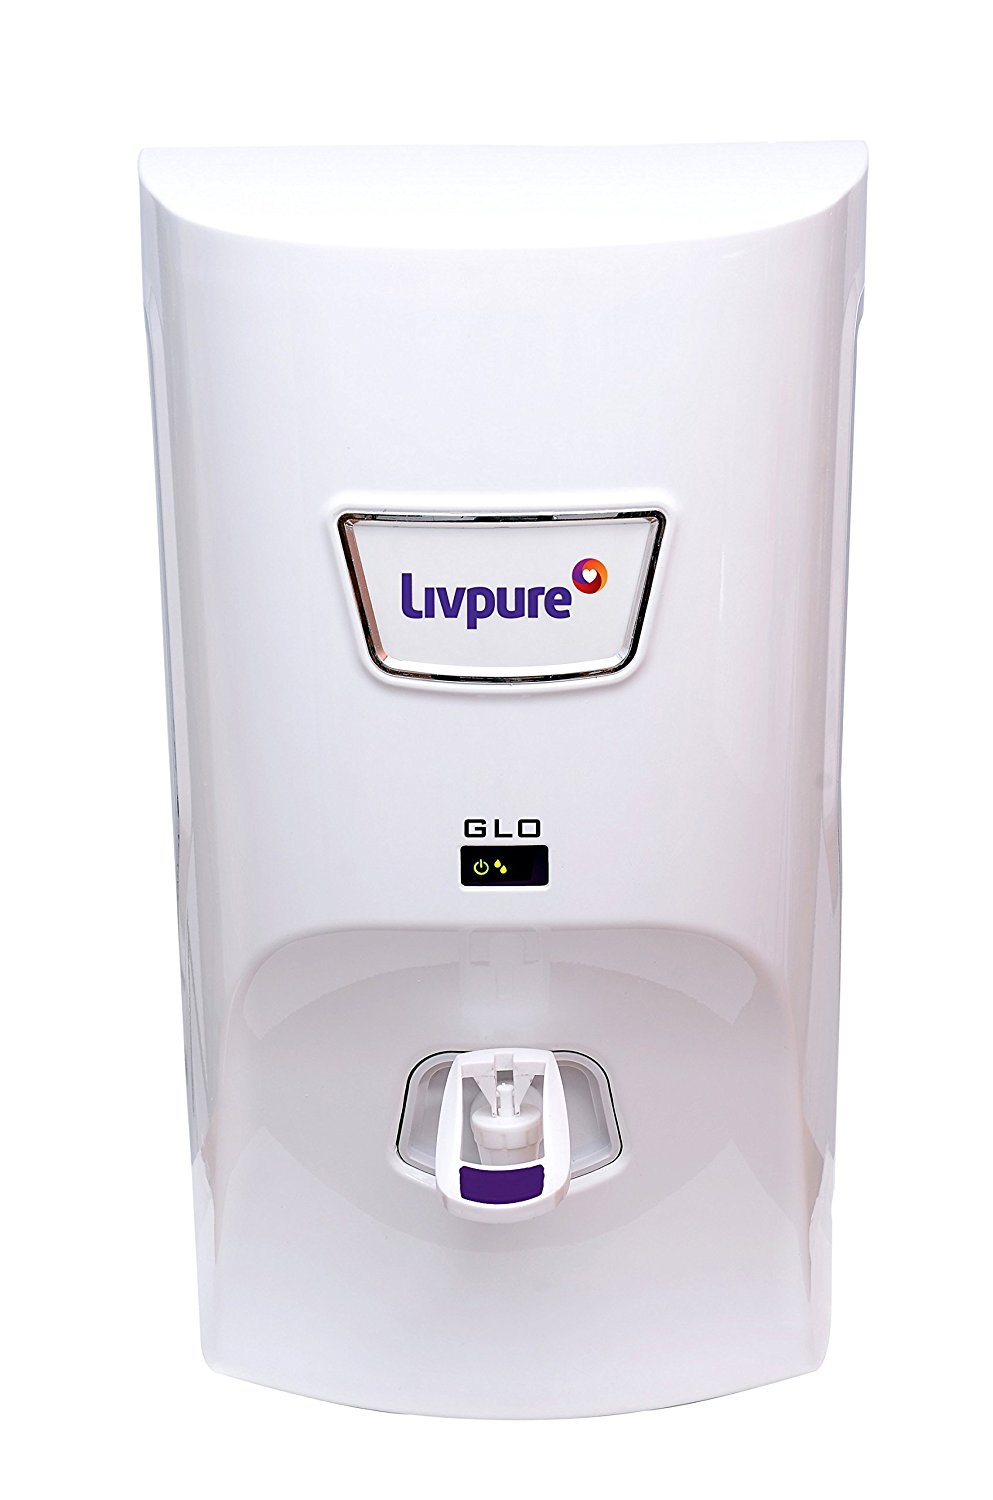 Livpure water purifier